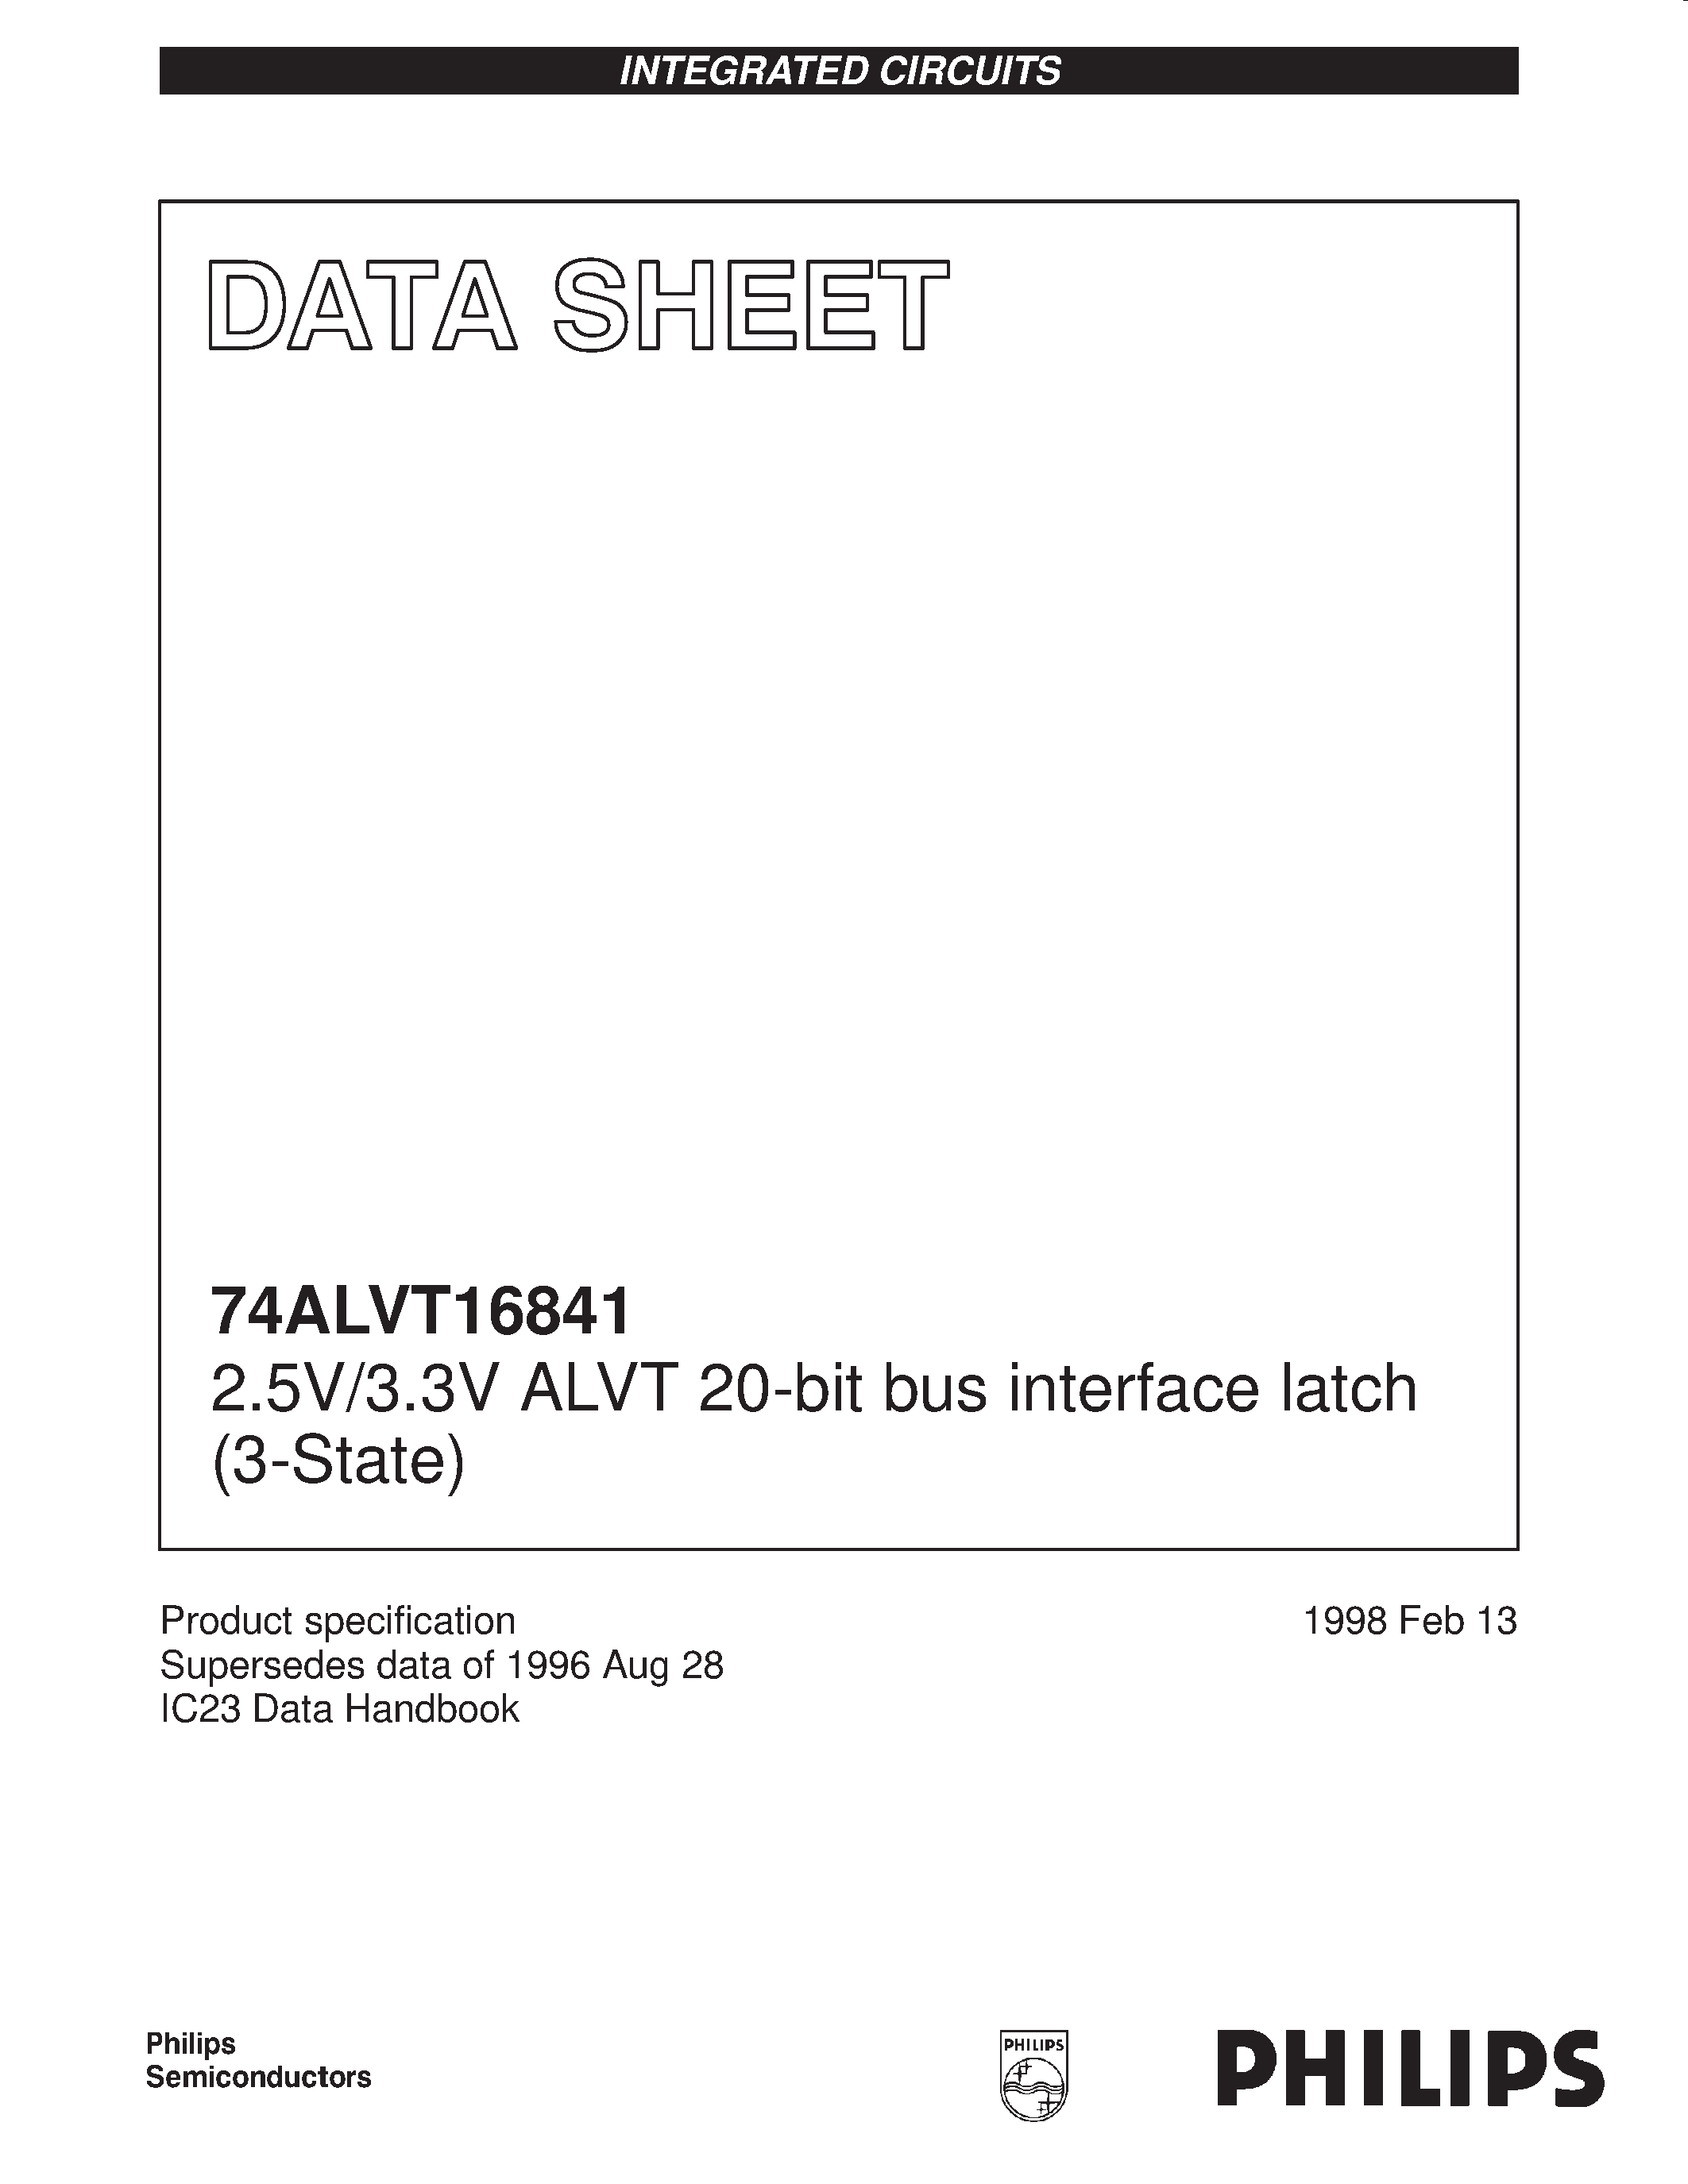 Datasheet 74ALVT16841DL - 2.5V/3.3V ALVT 20-bit bus interface latch 3-State page 1